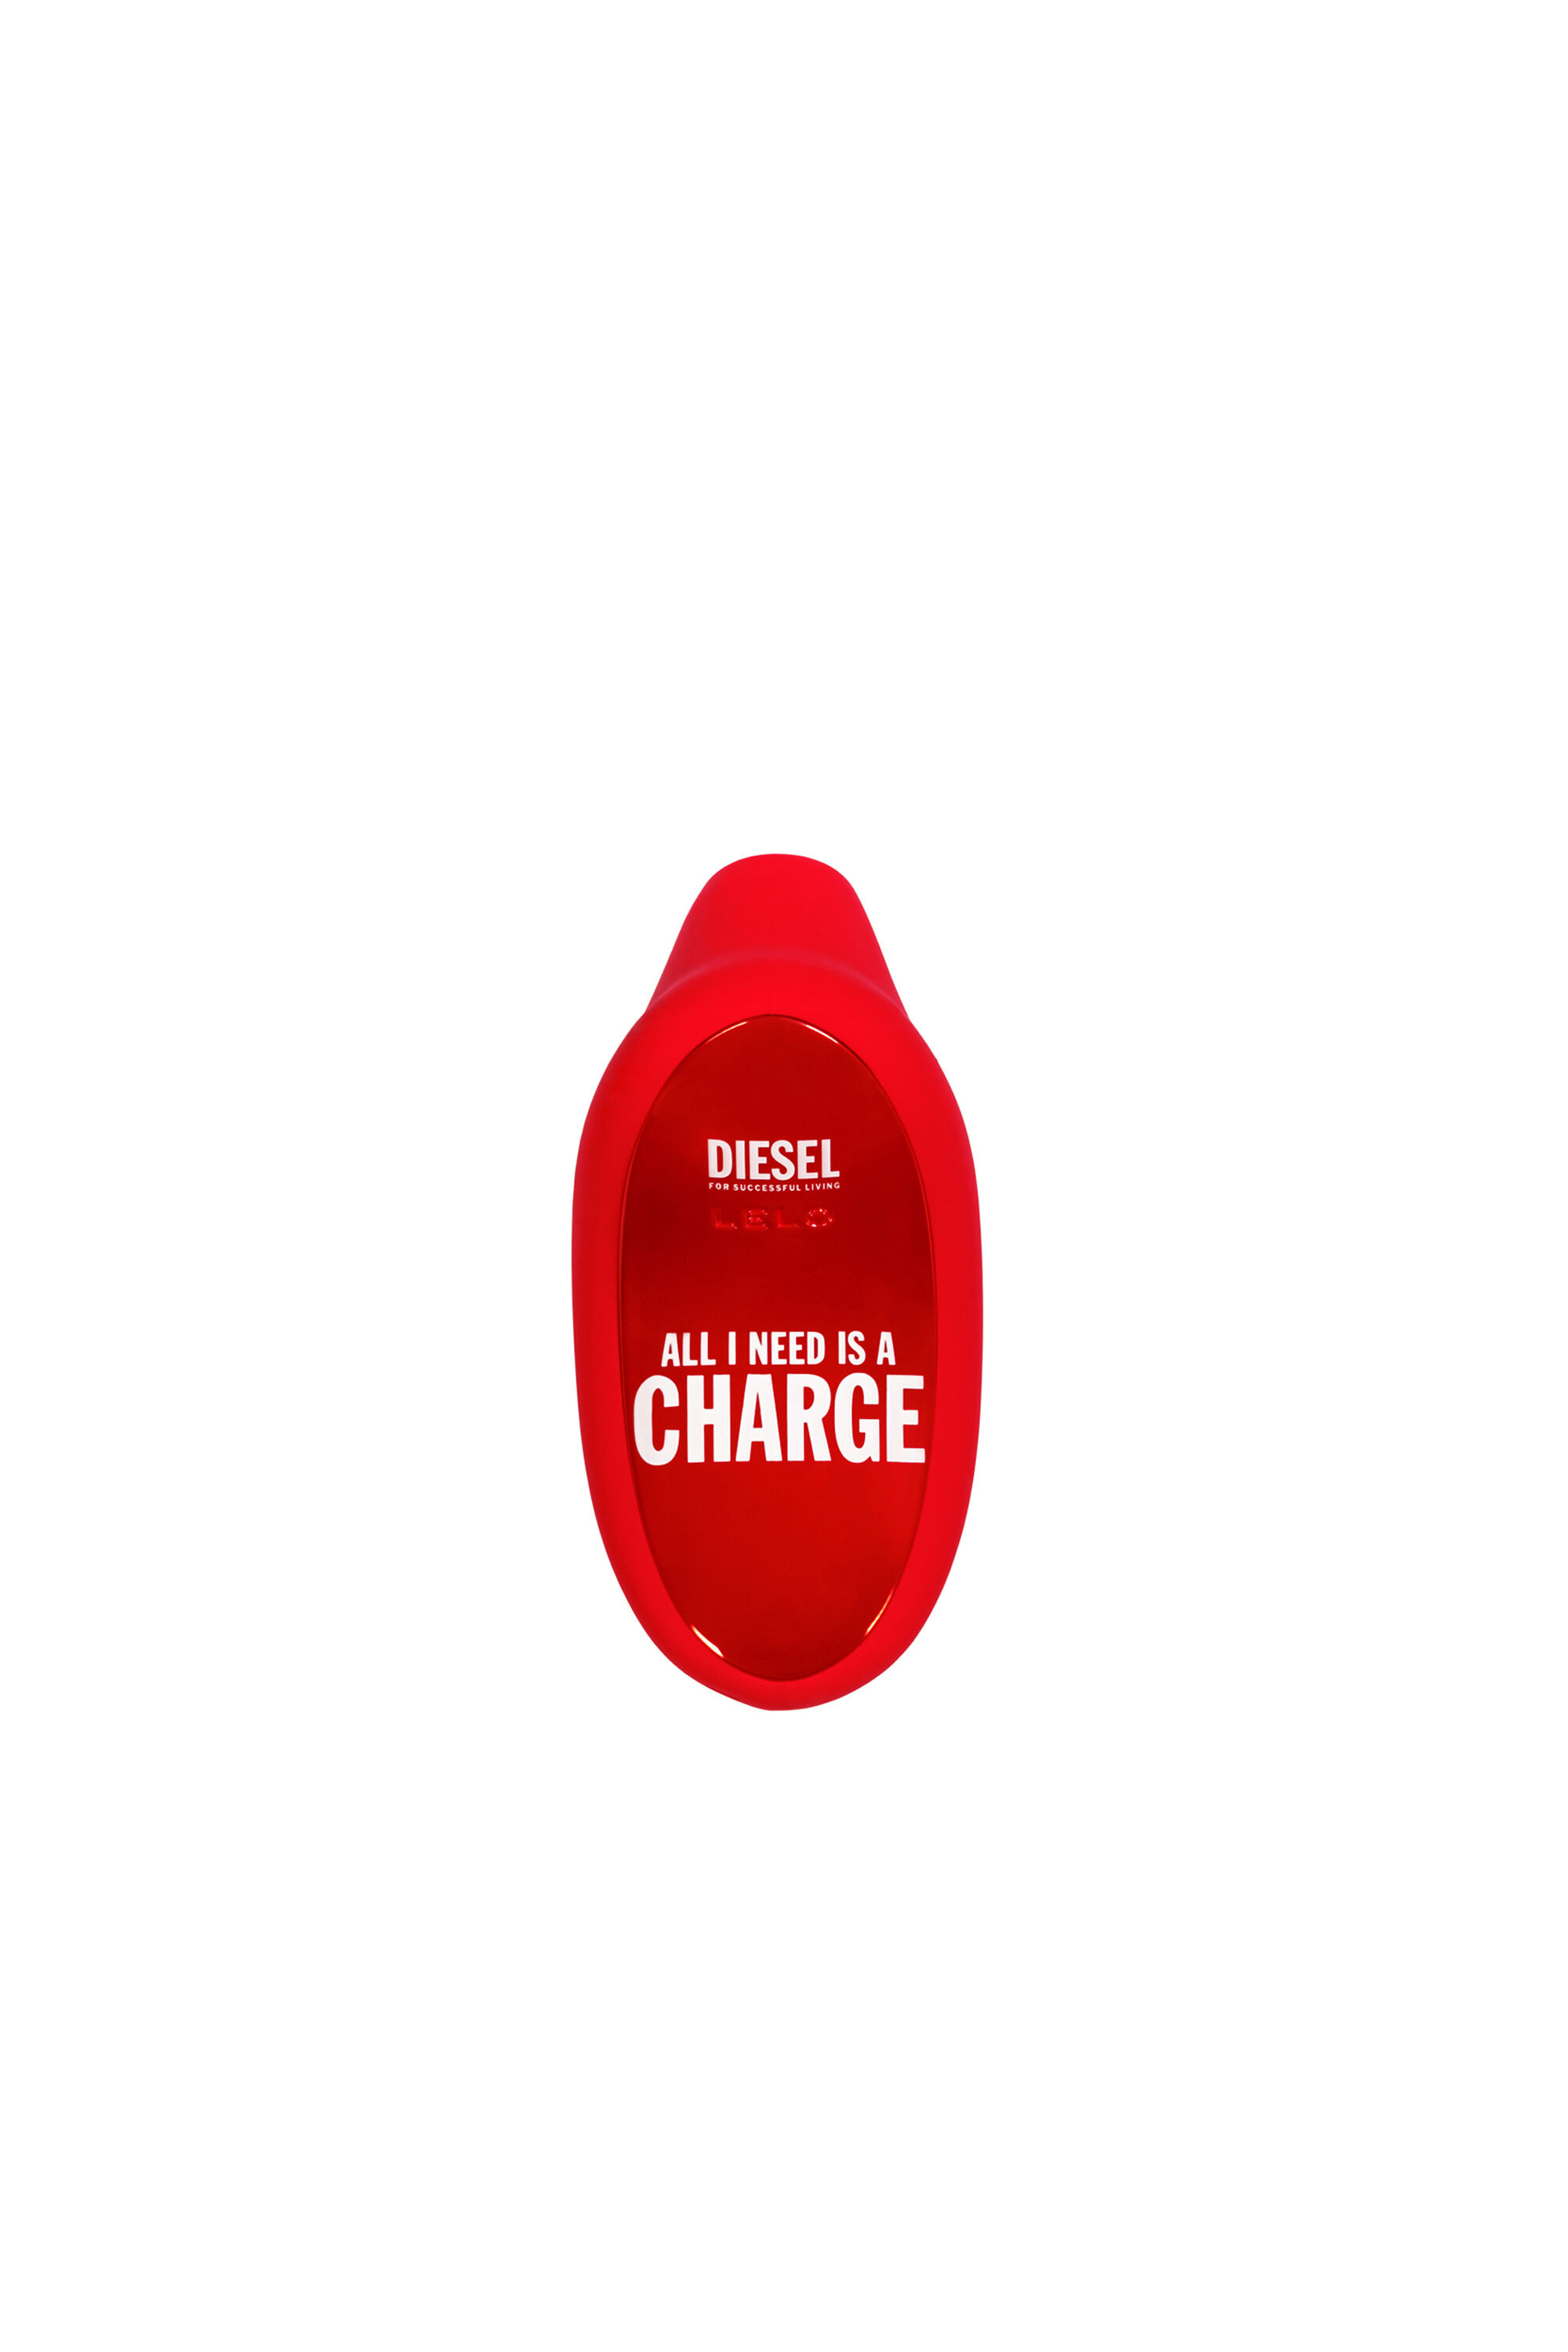 Diesel - 8687 SONA CRUISE X DIESEL, Red - Image 2